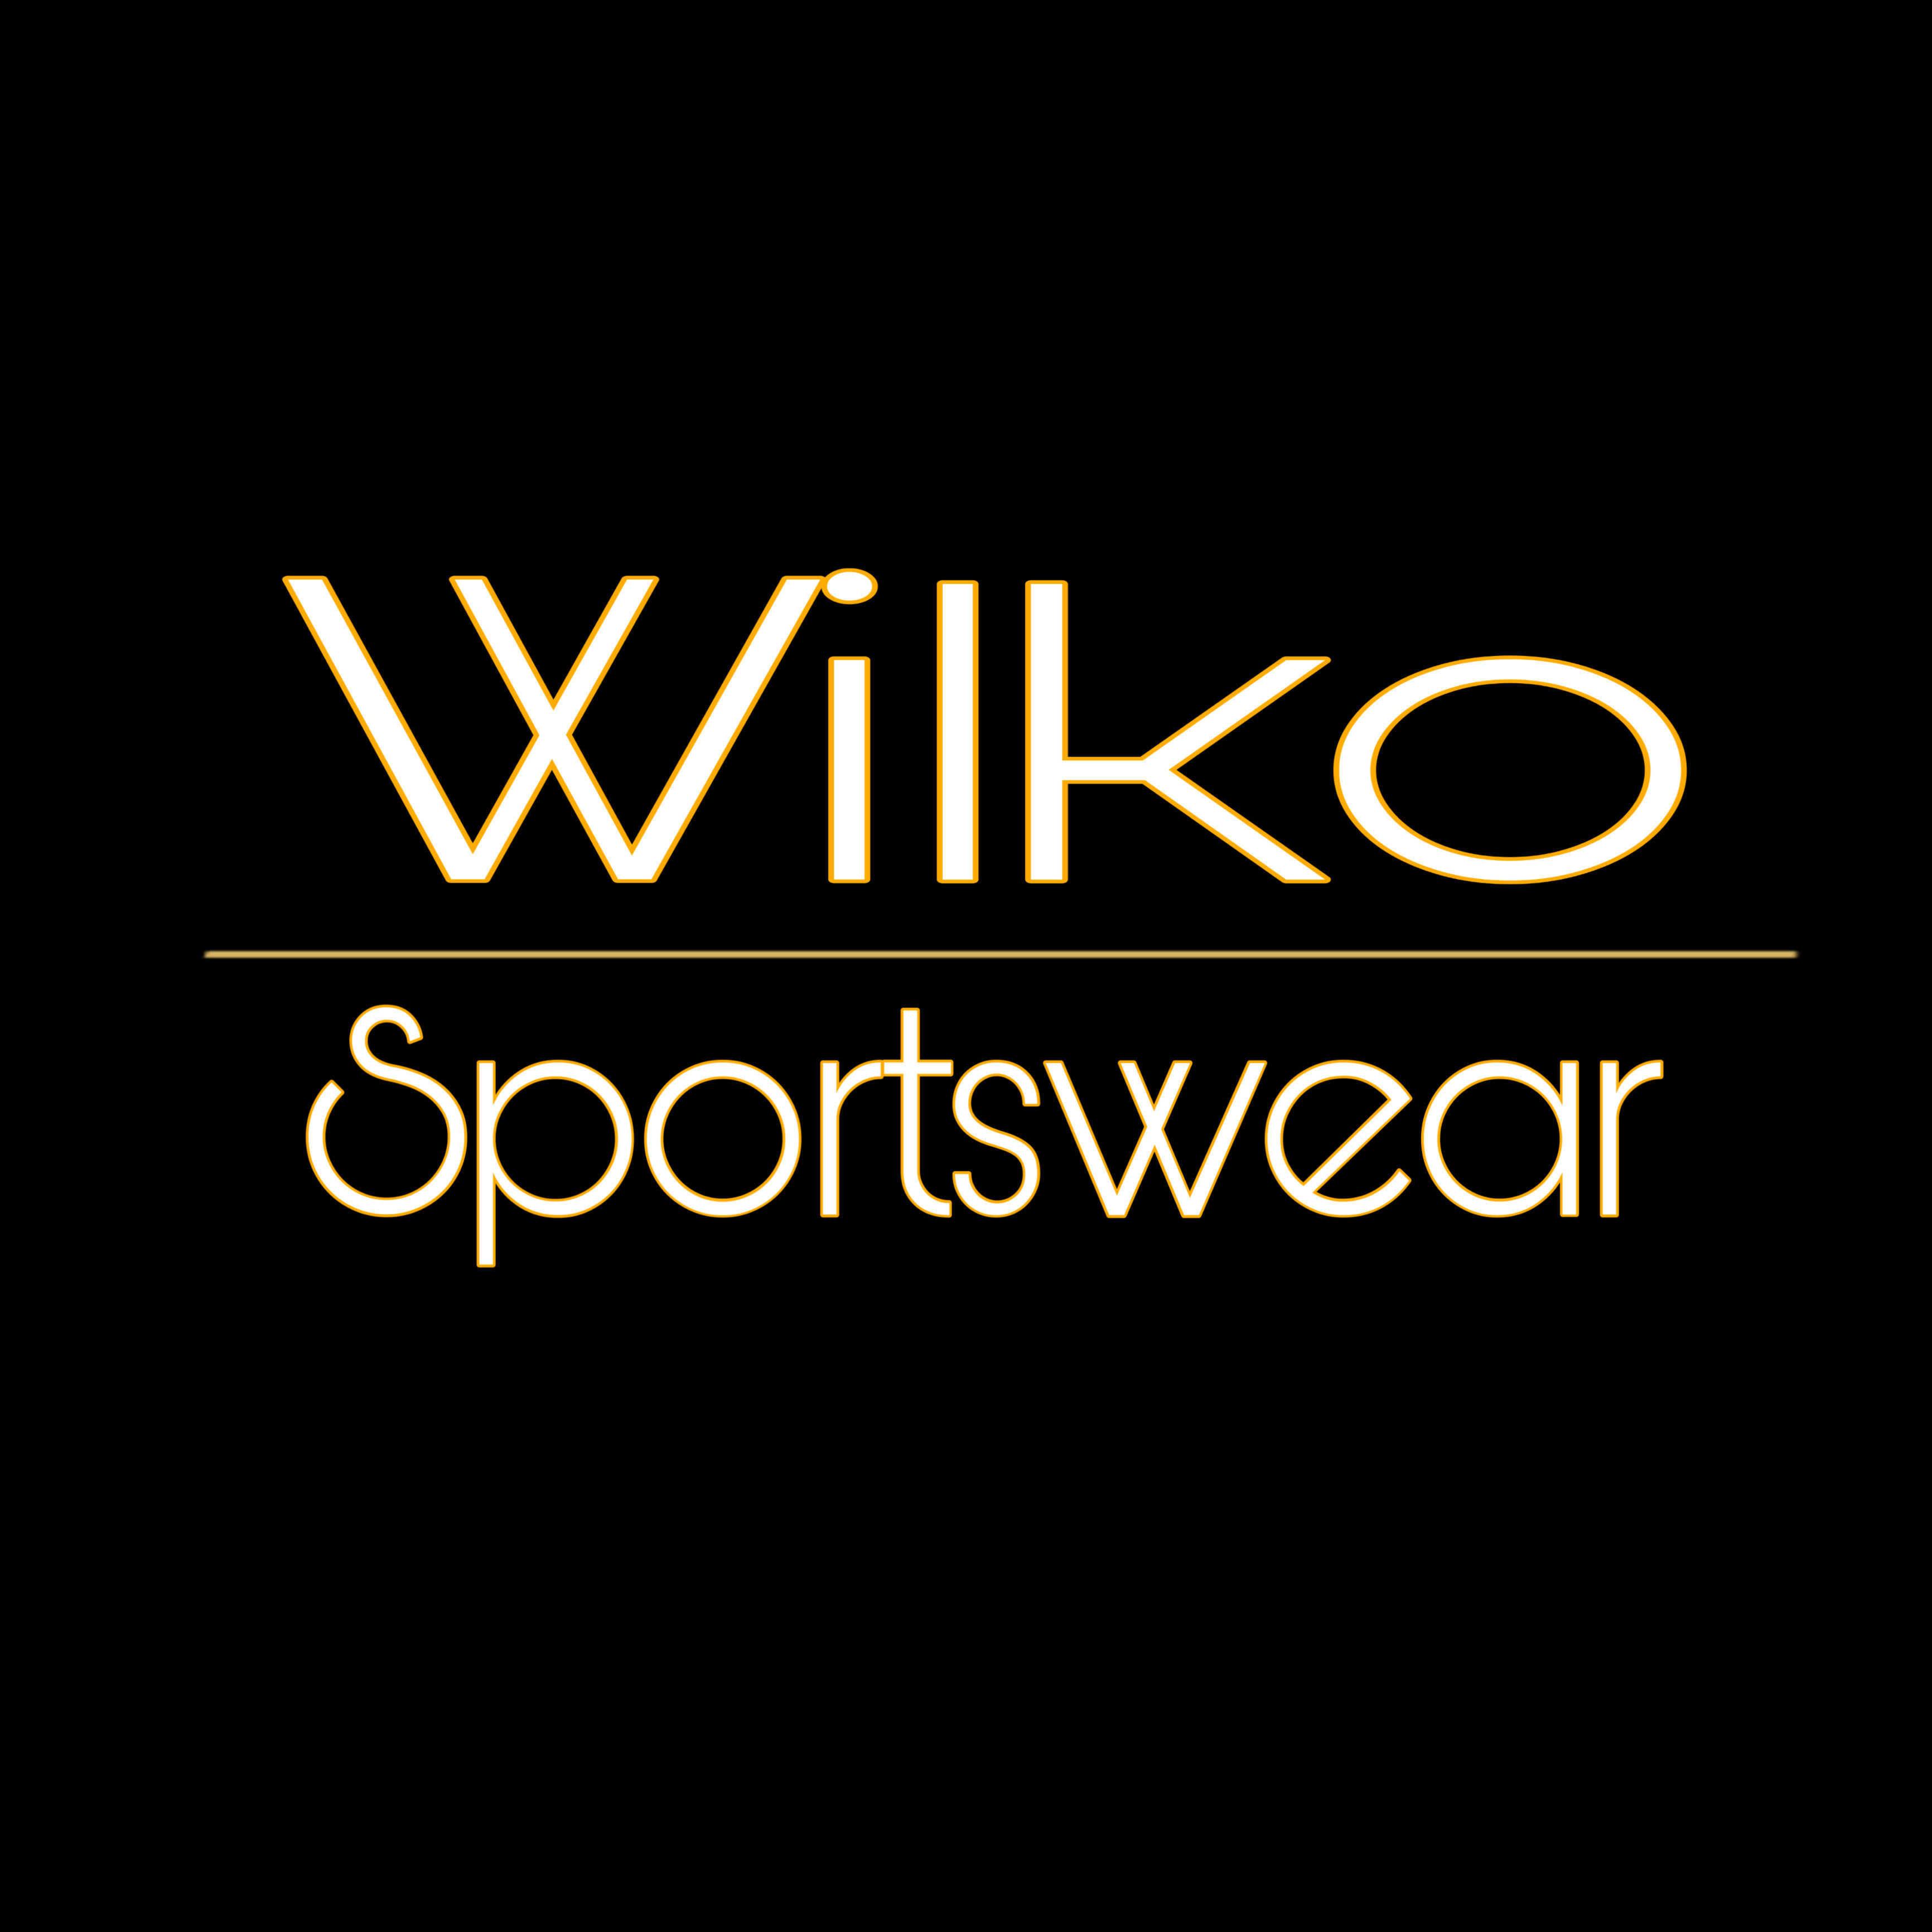 Wilko Sportswear